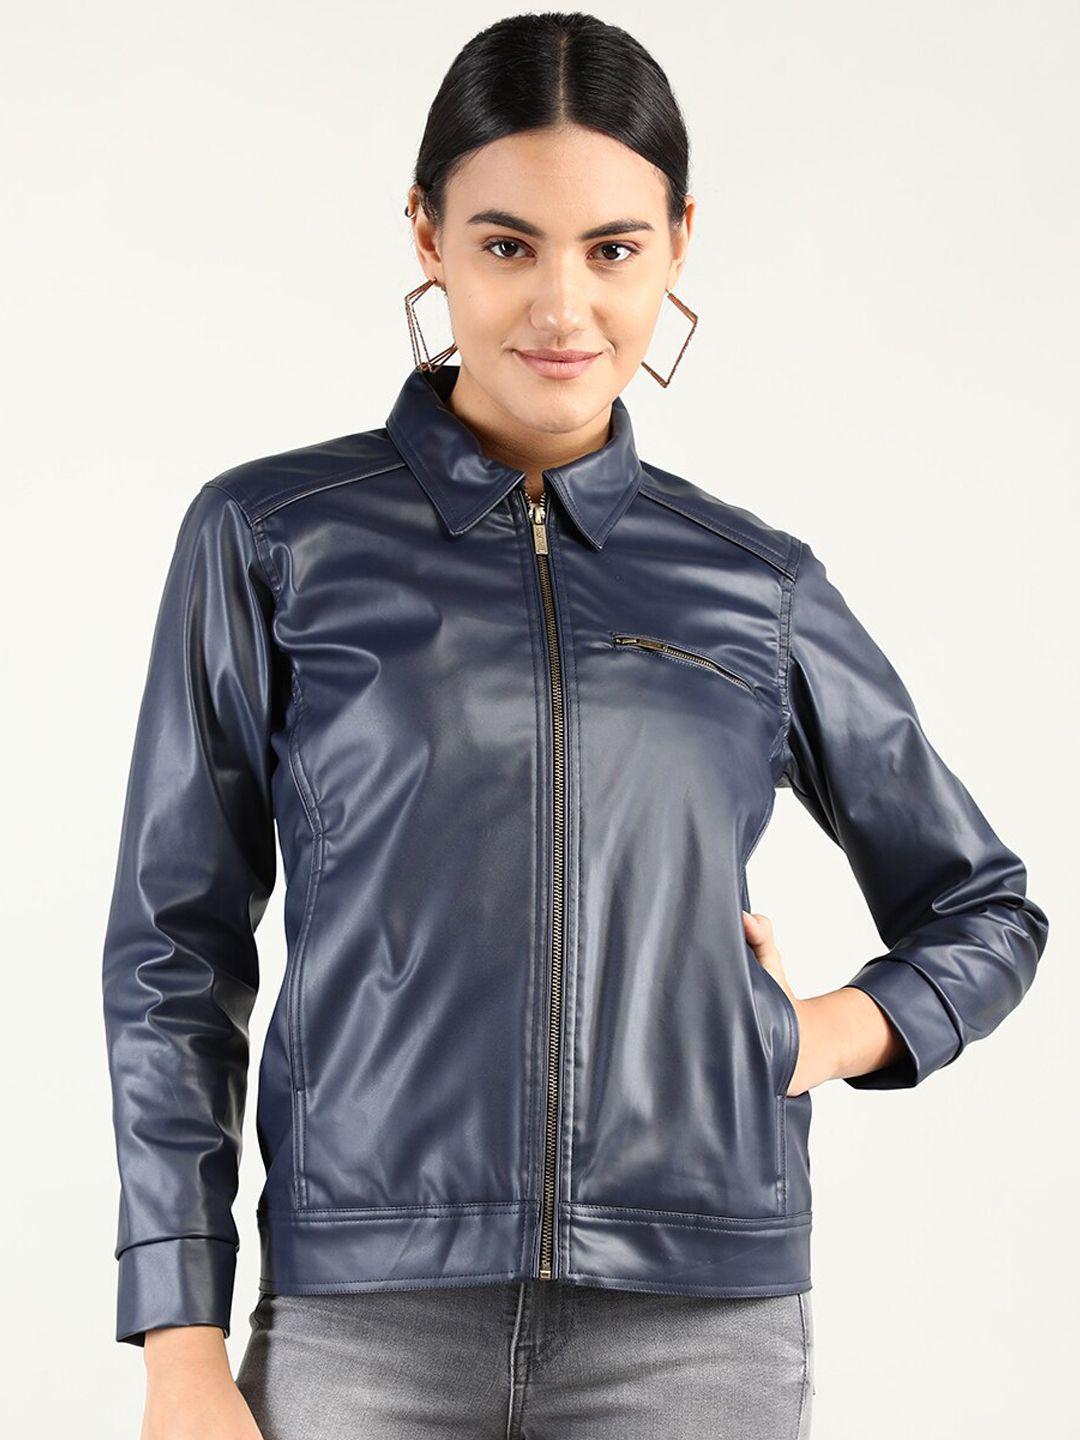 dlanxa women leather jacket